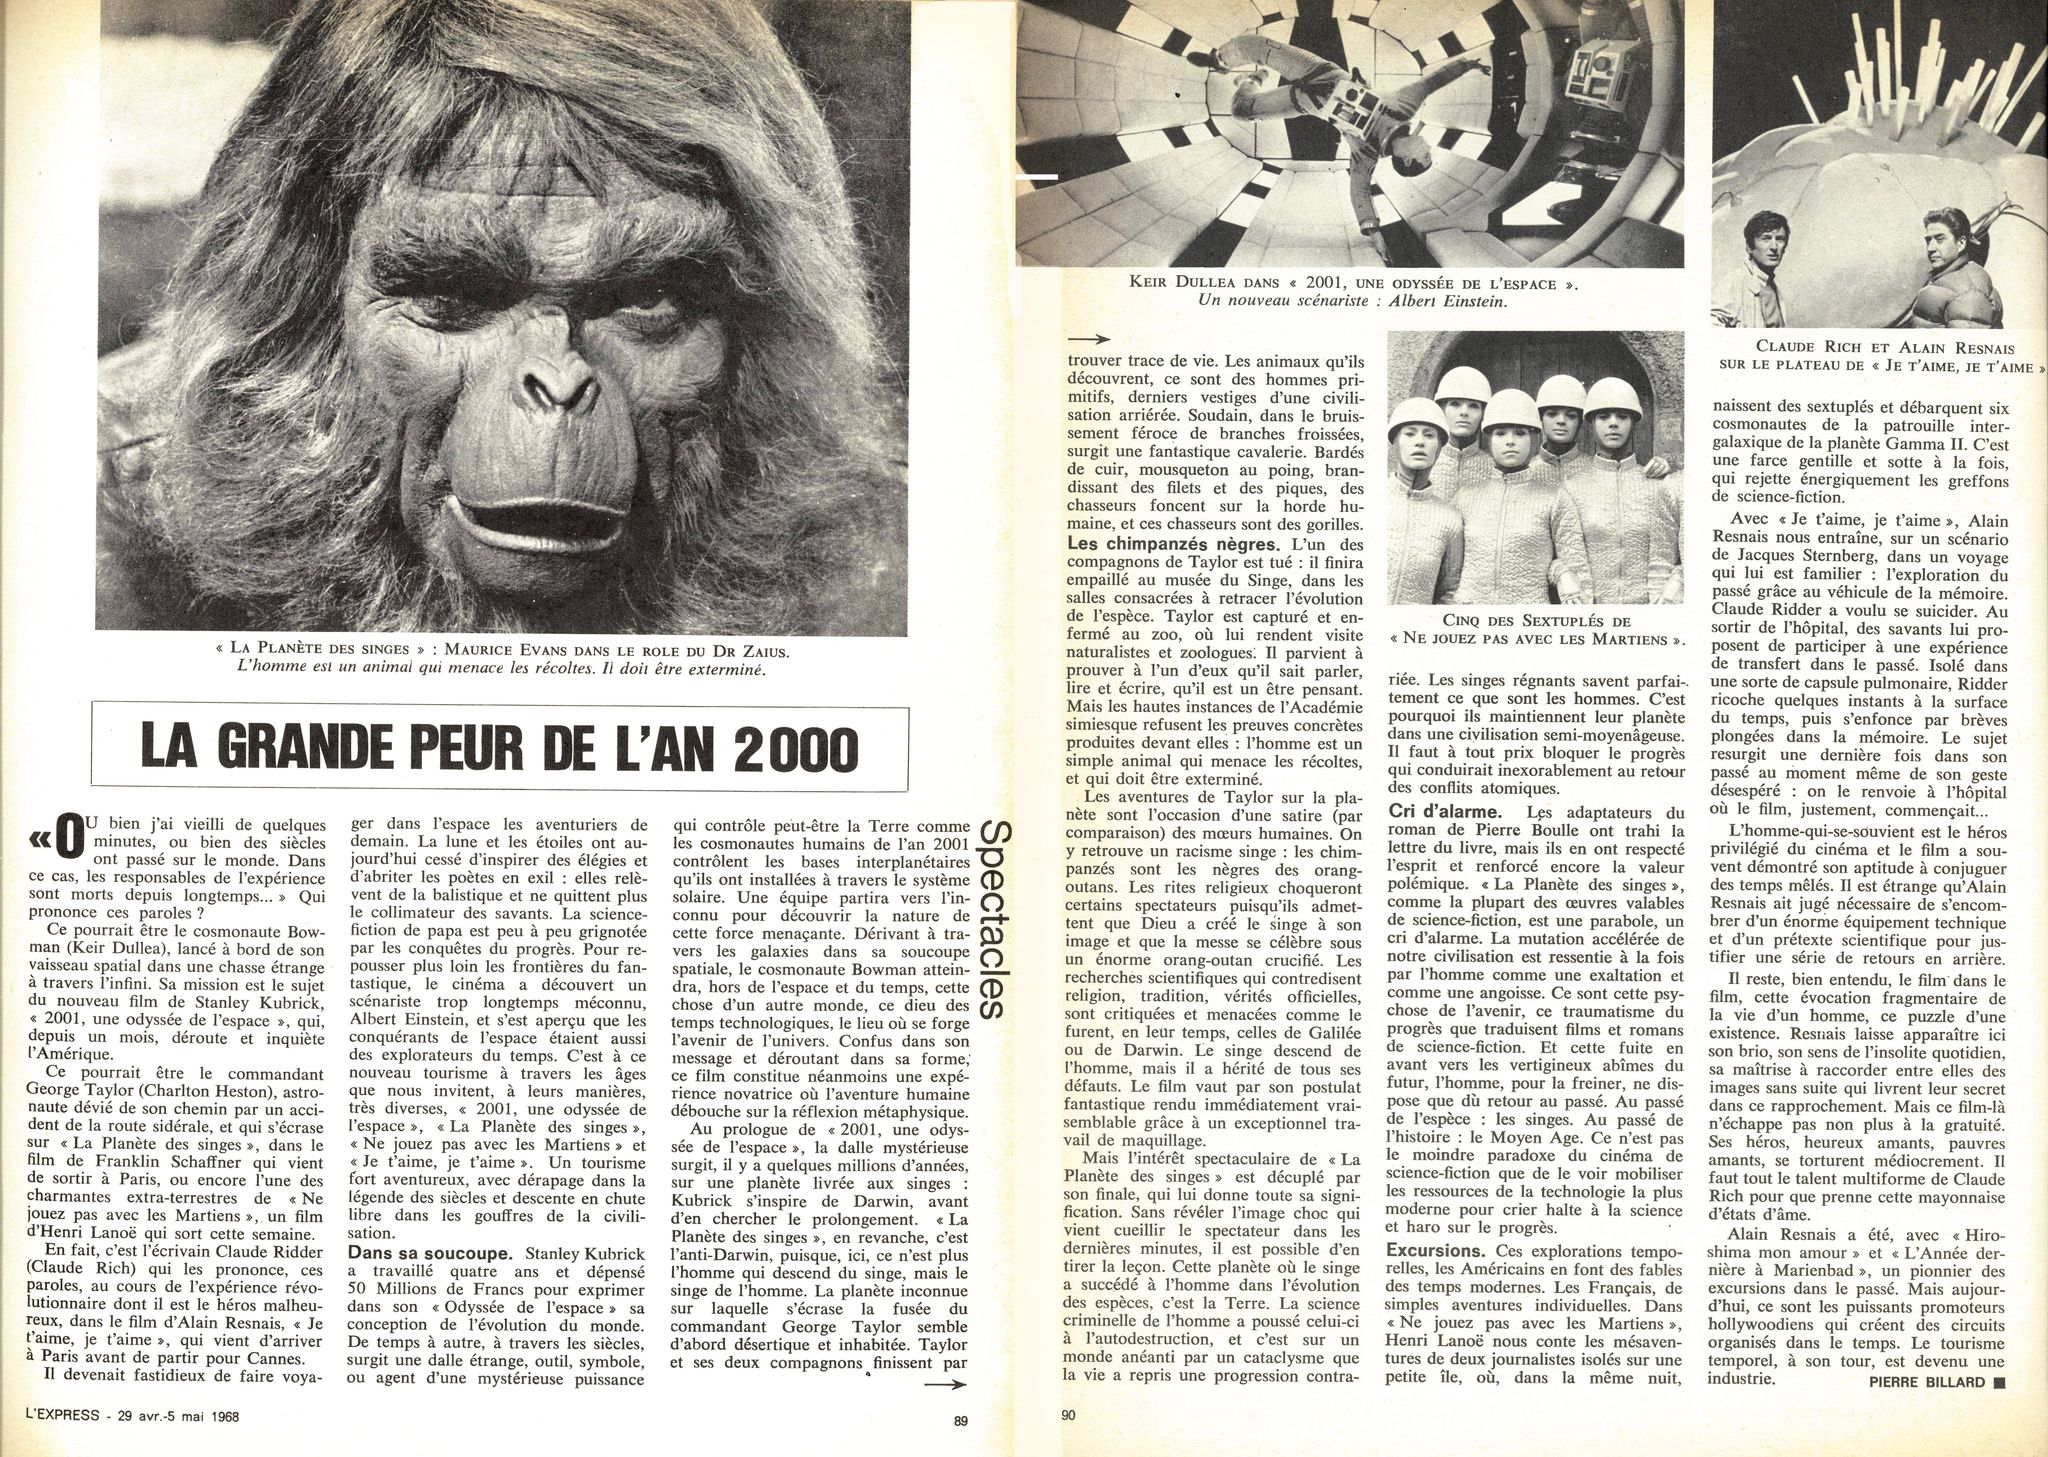 Les grands singes possèdent une mémoire cinématographique - Sciences et  Avenir